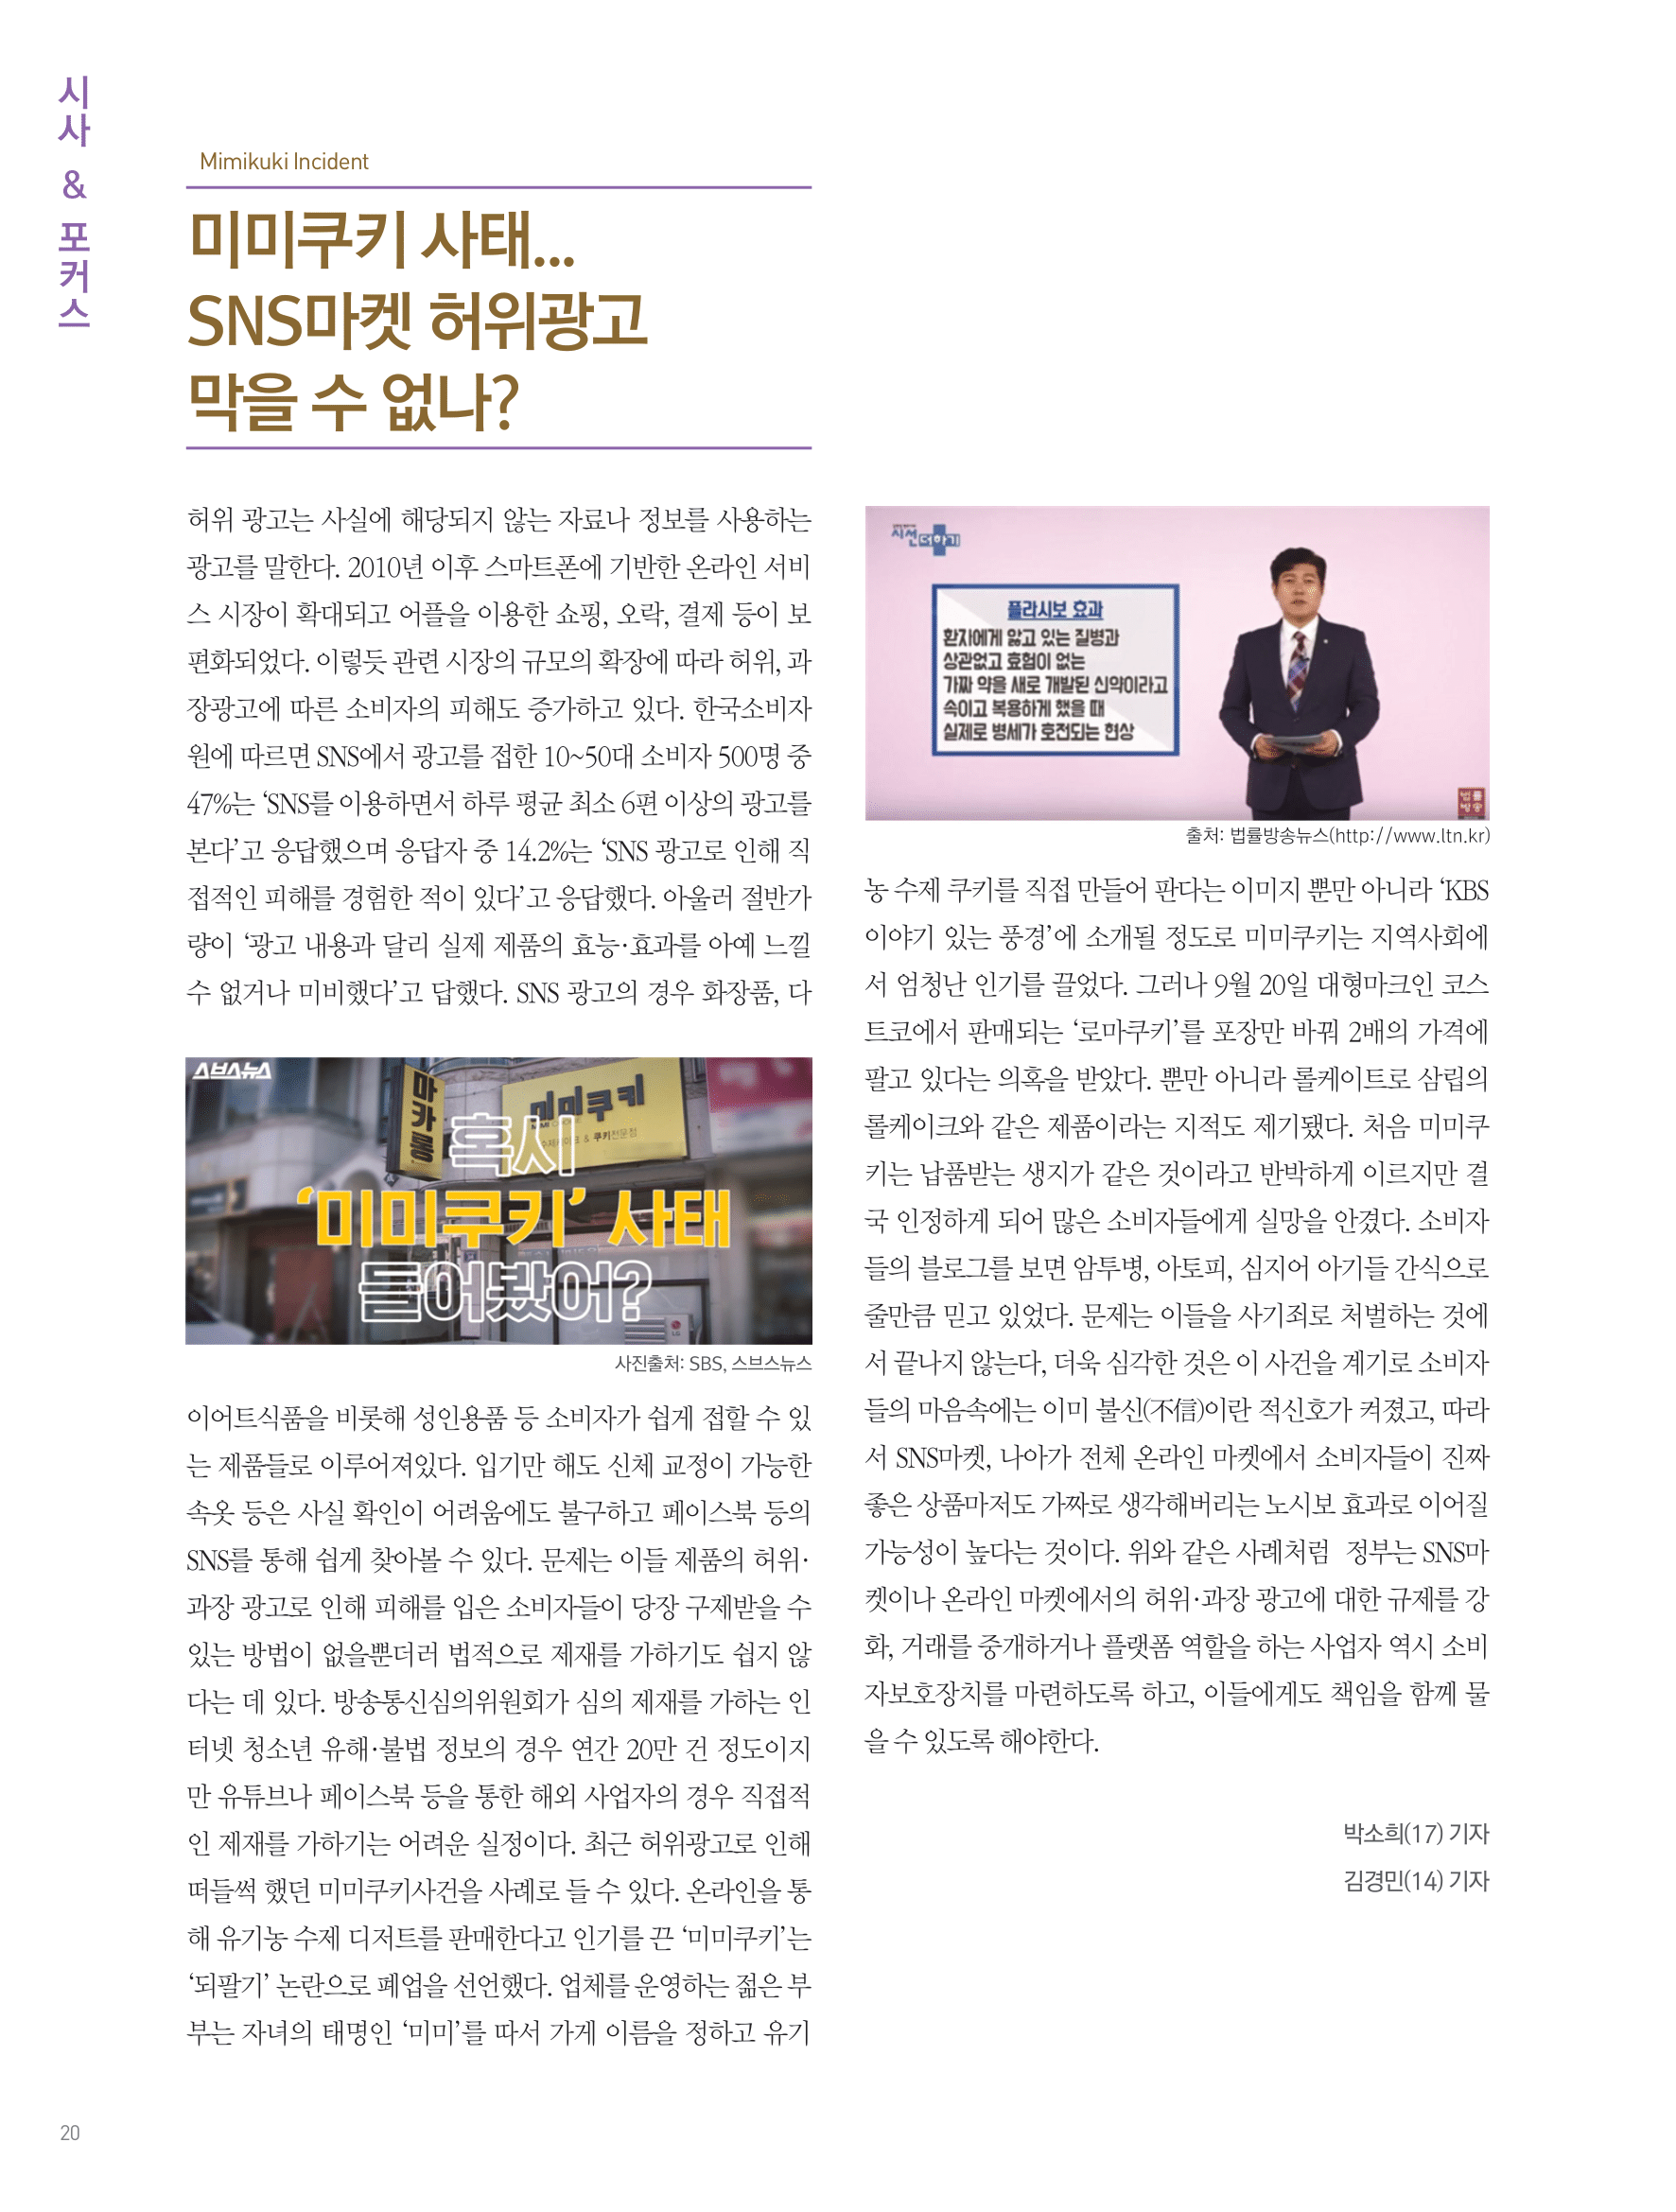 뜻새김 신문 72호 21